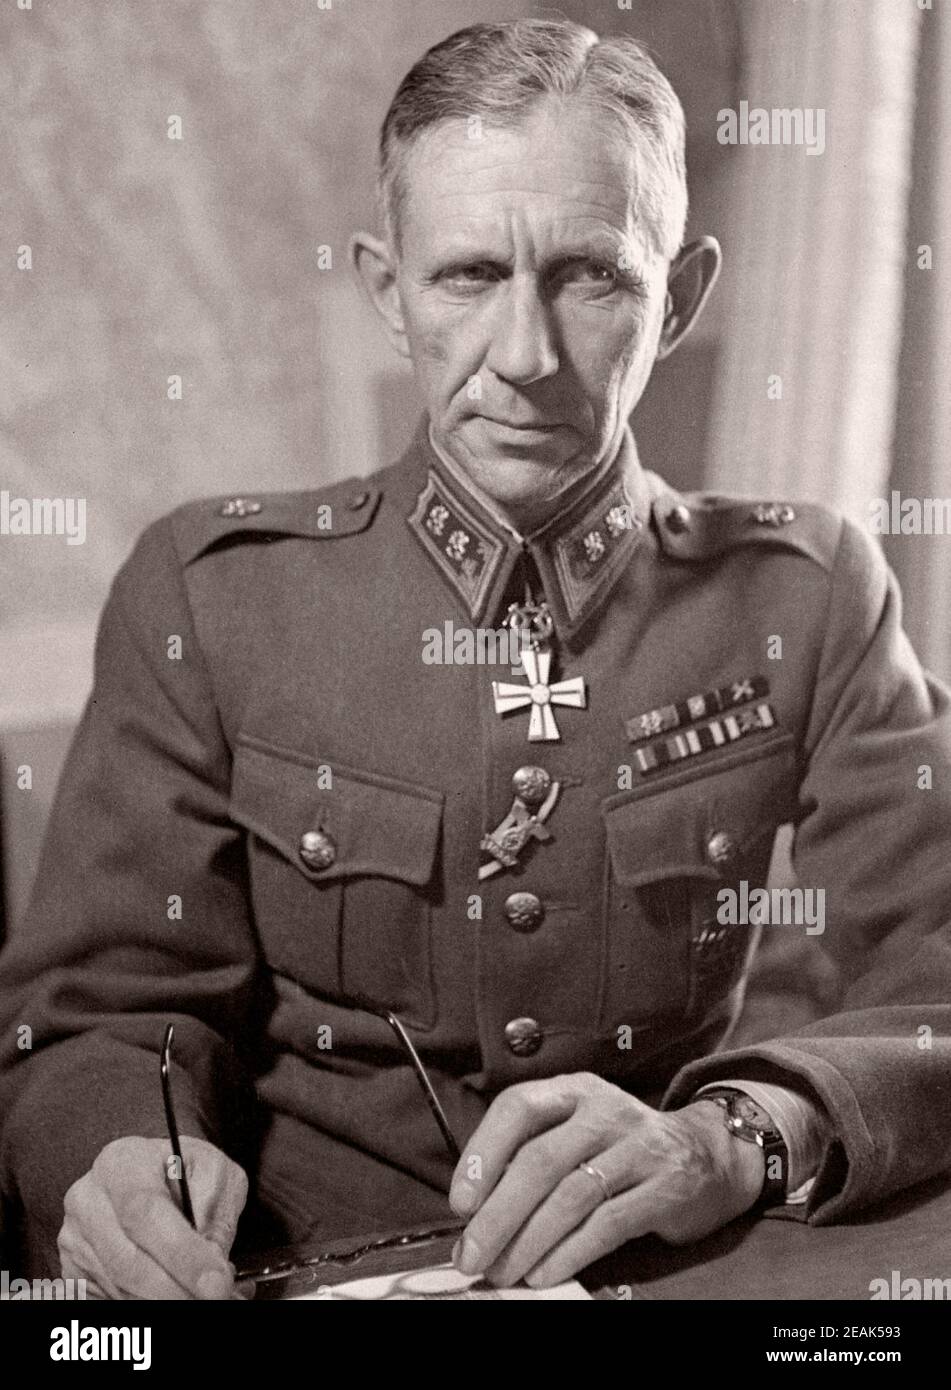 Harald Ohquist (Harald Öhquist, 1891-1971) war eine Finnische Generalleutnant und Jaeger, einer ethnischen Schwedische Familie. Stockfoto